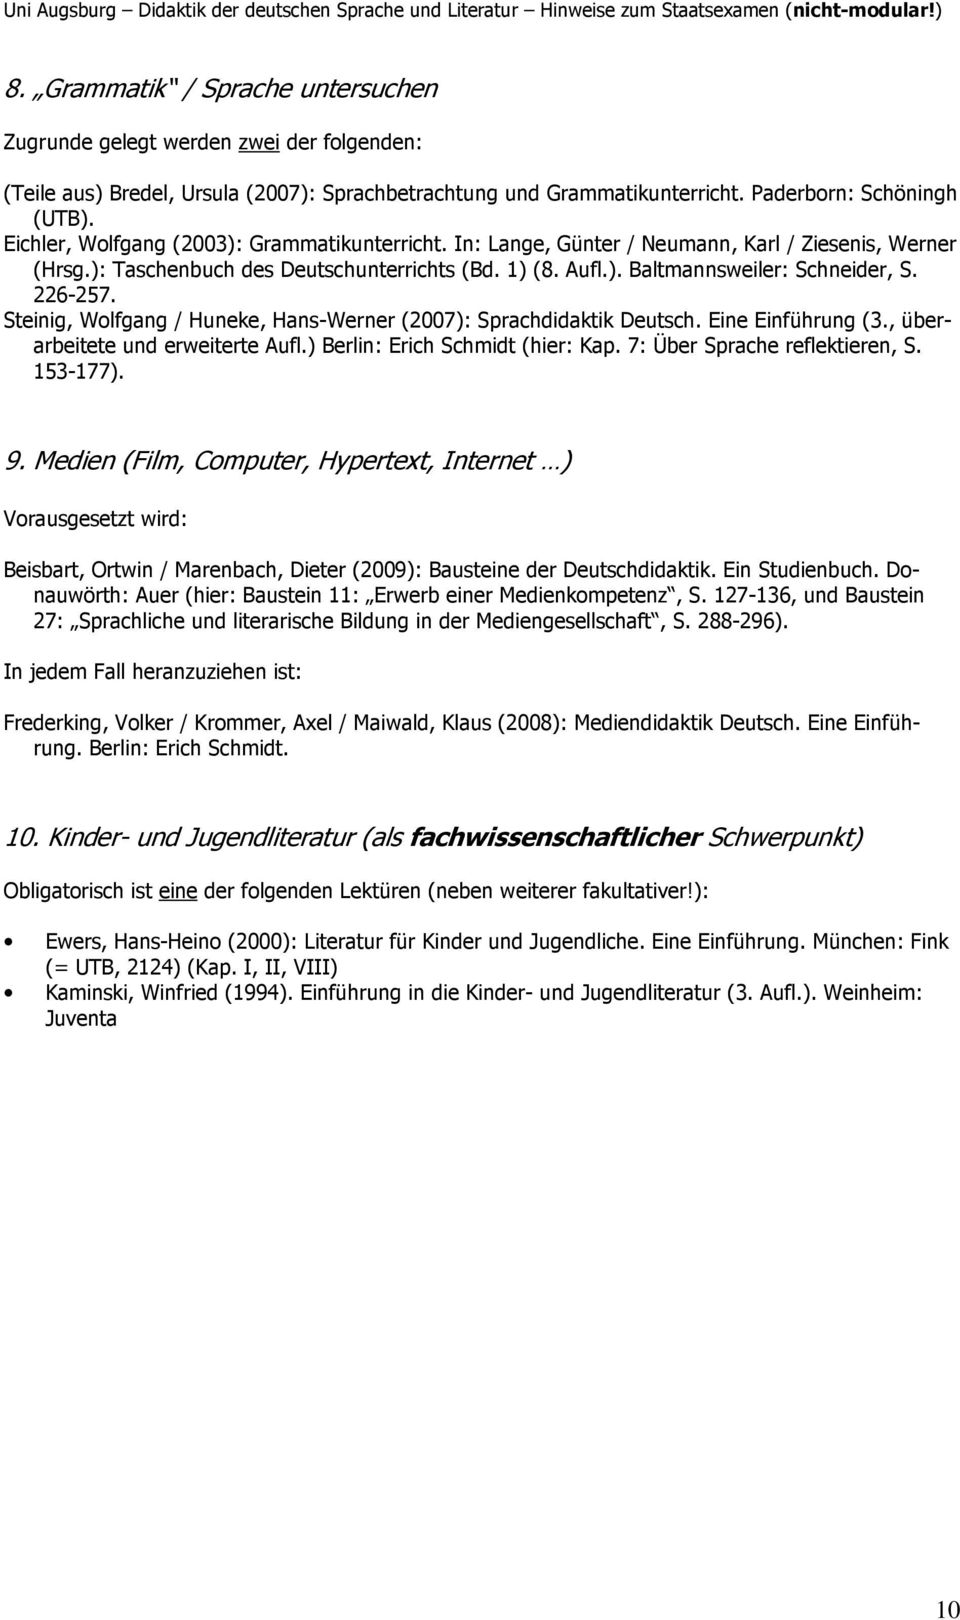 226-257. Steinig, Wolfgang / Huneke, Hans-Werner (2007): Sprachdidaktik Deutsch. Eine Einführung (3., überarbeitete und erweiterte Aufl.) Berlin: Erich Schmidt (hier: Kap.